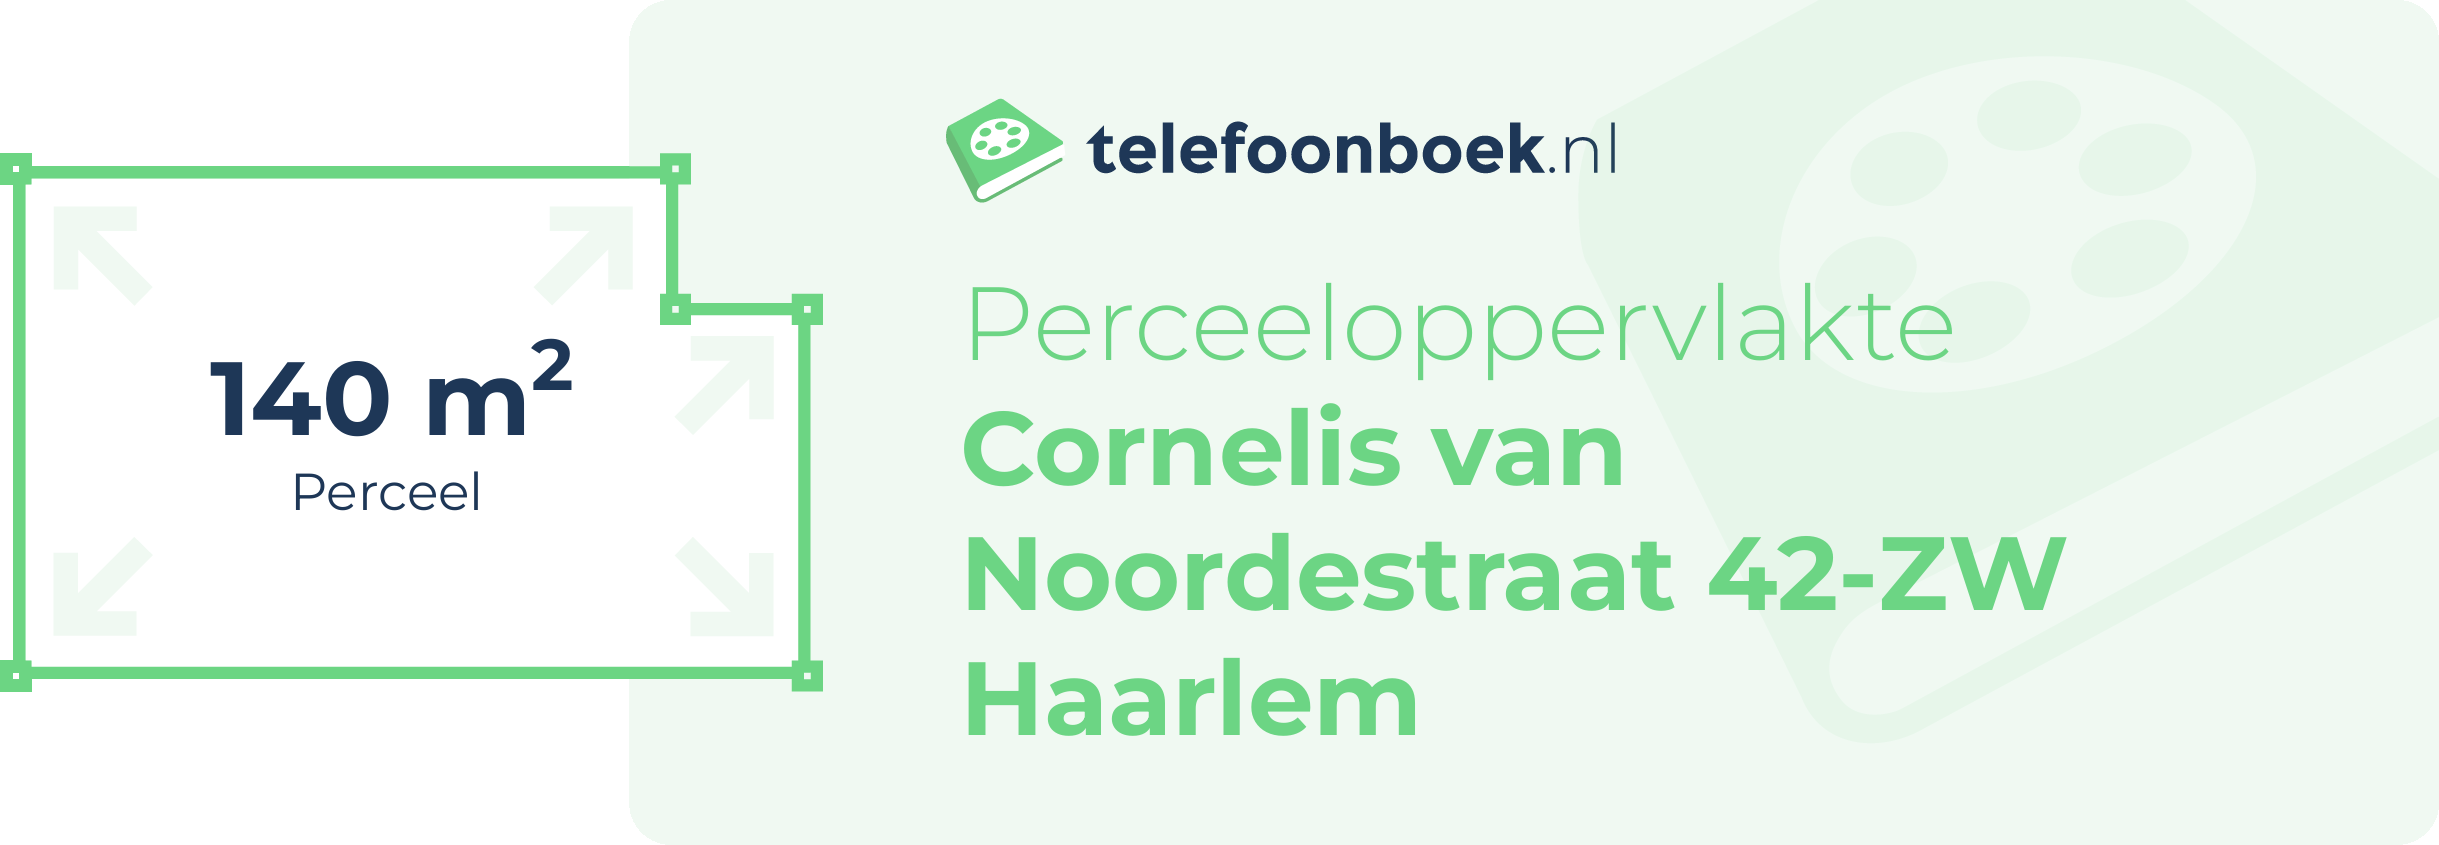 Perceeloppervlakte Cornelis Van Noordestraat 42-ZW Haarlem